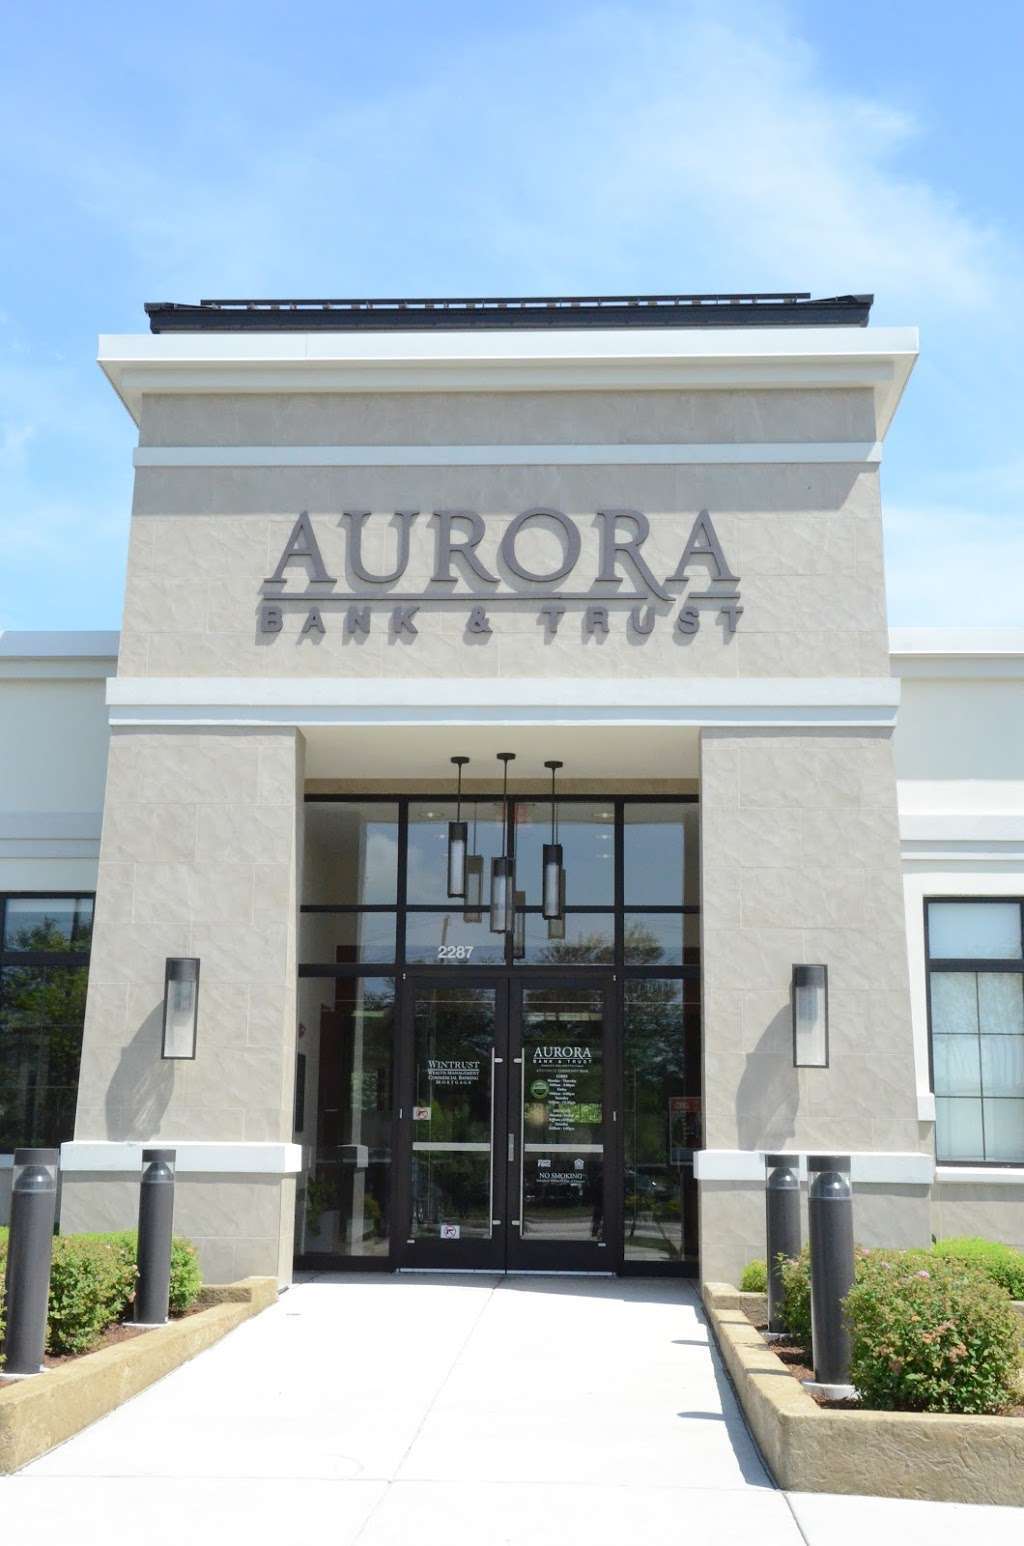 Aurora Bank & Trust | 2287 W Galena Blvd, Aurora, IL 60506, USA | Phone: (331) 684-9199